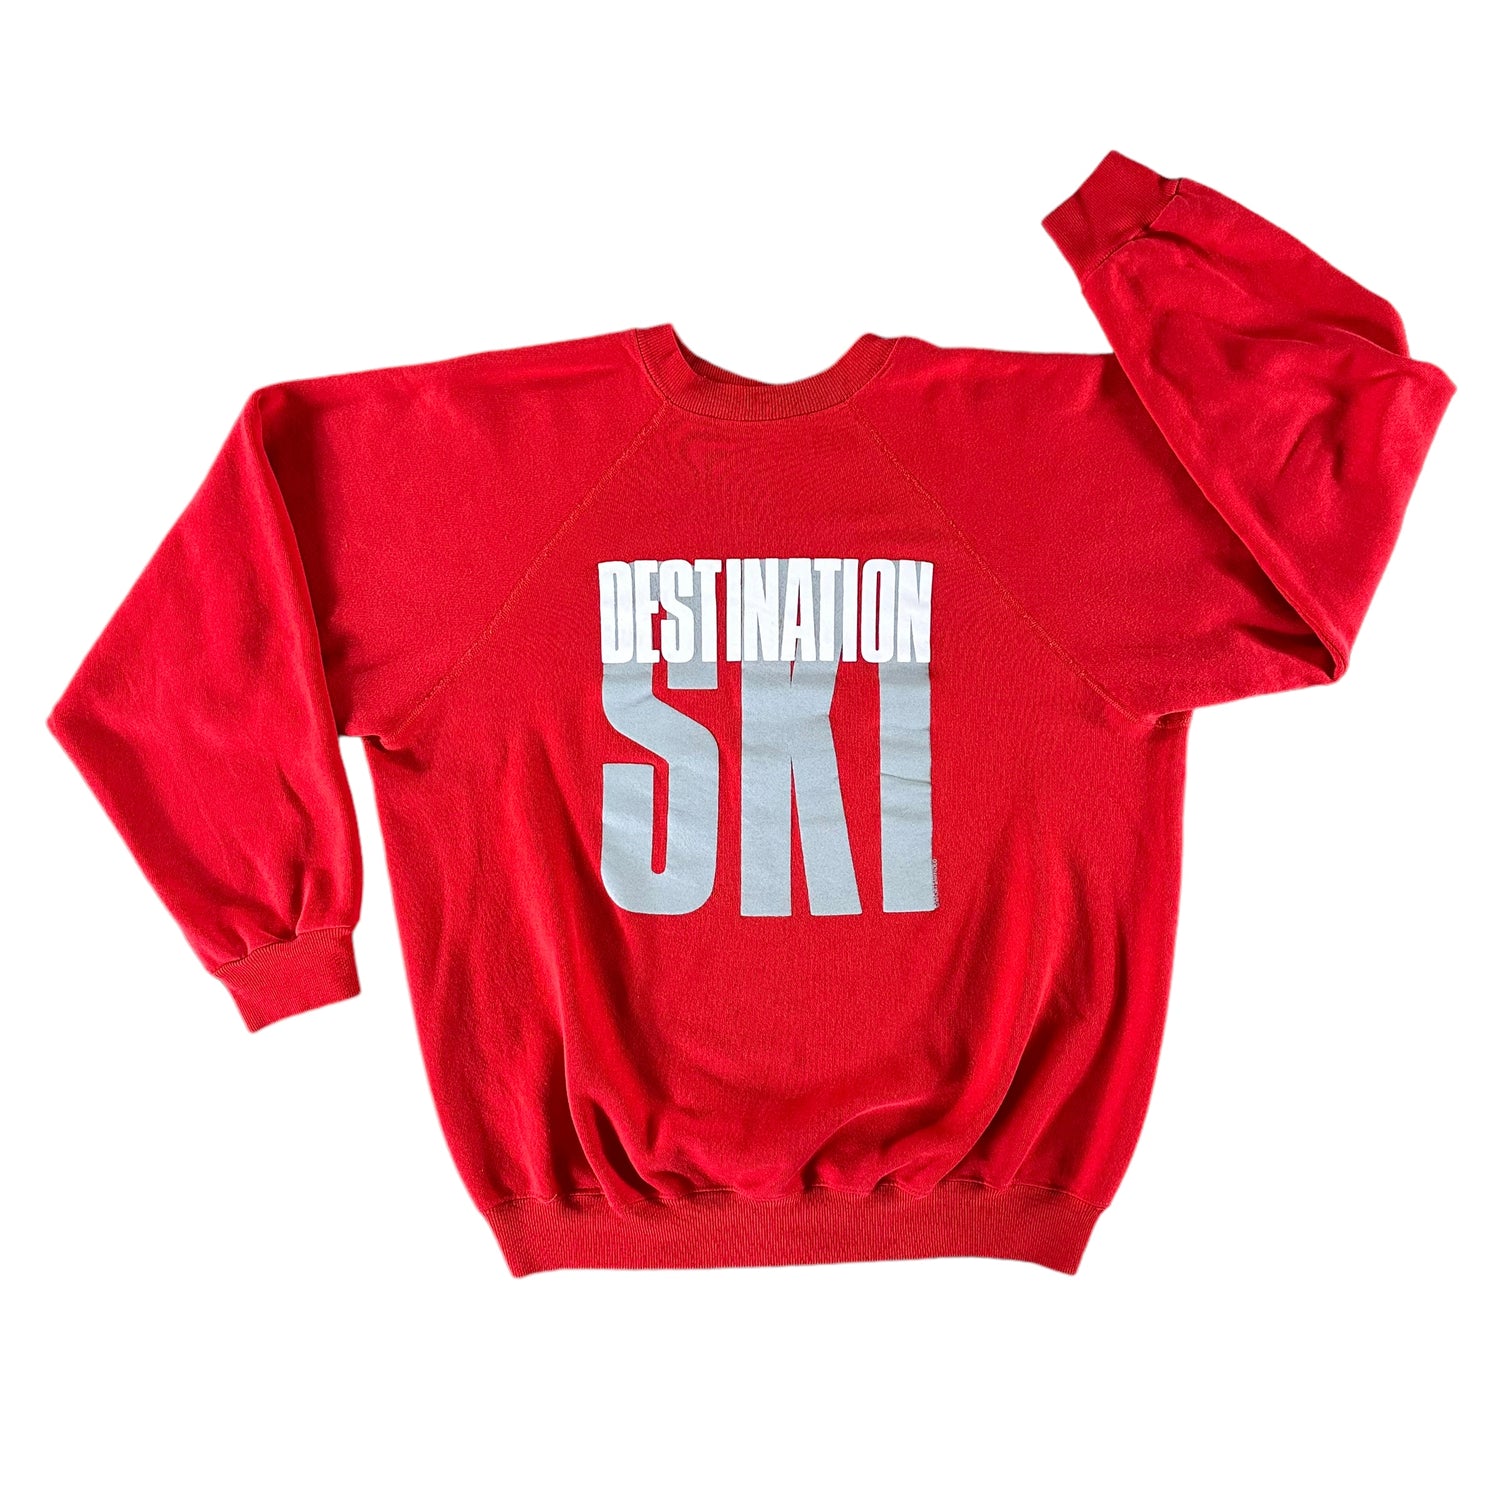 Vintage 1990s Destination Ski Sweatshirt size XL